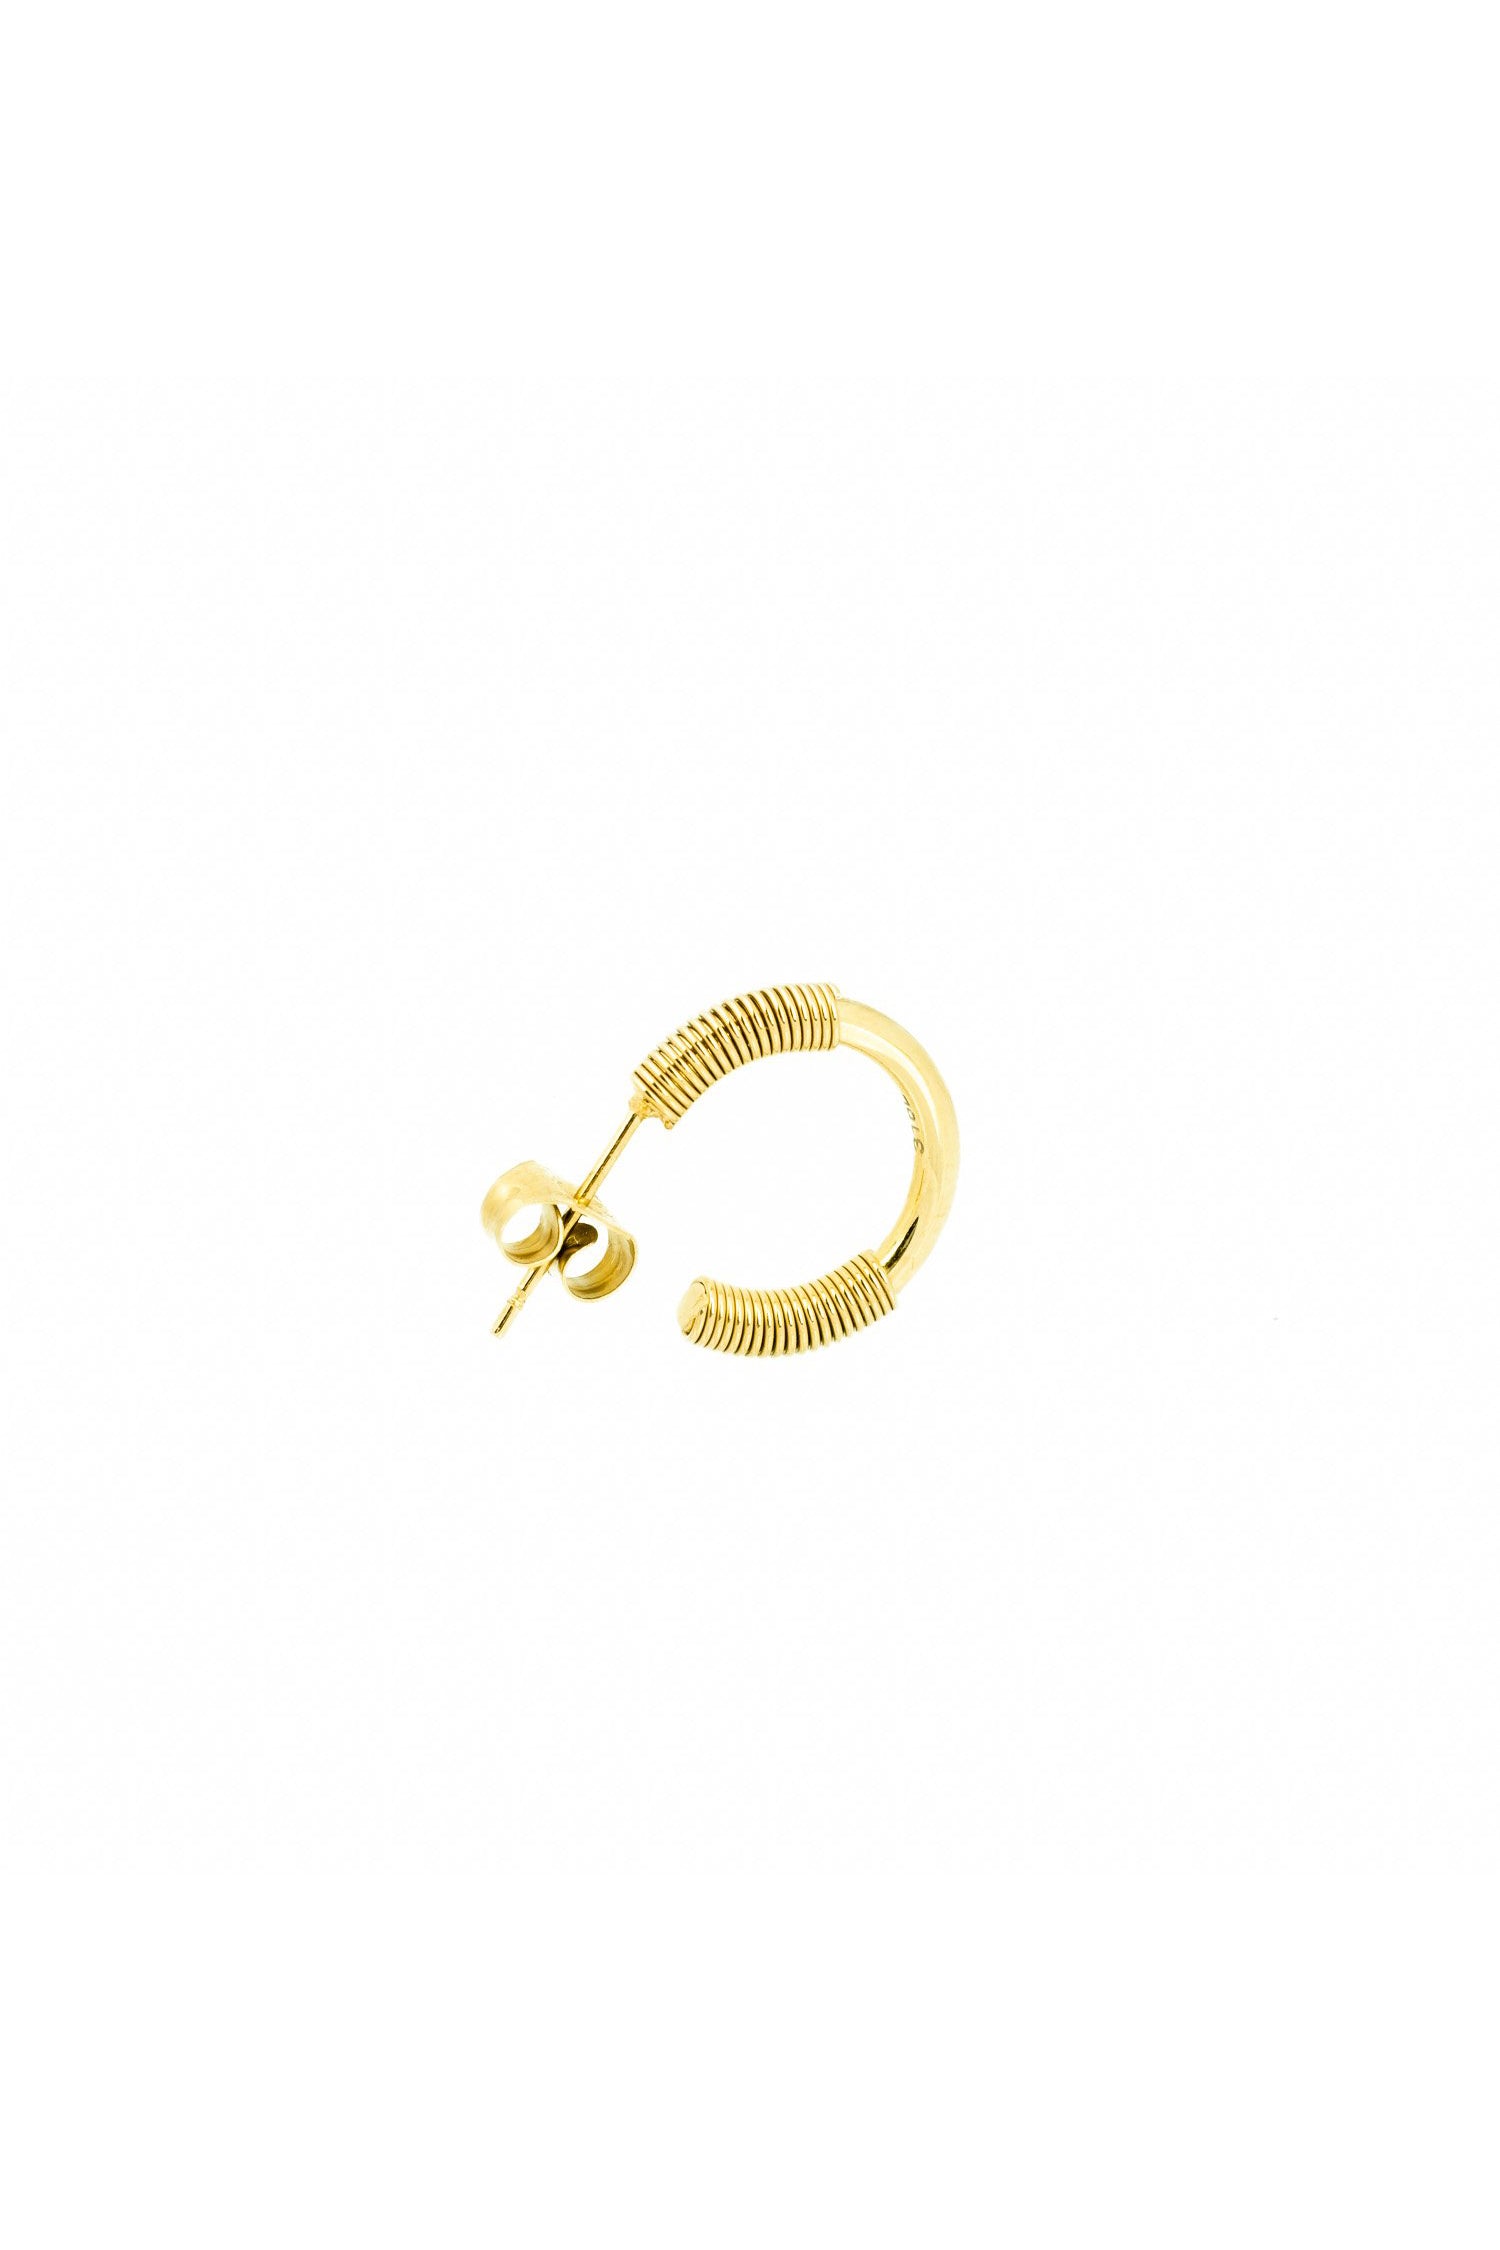 Spiral Earrings - Gold